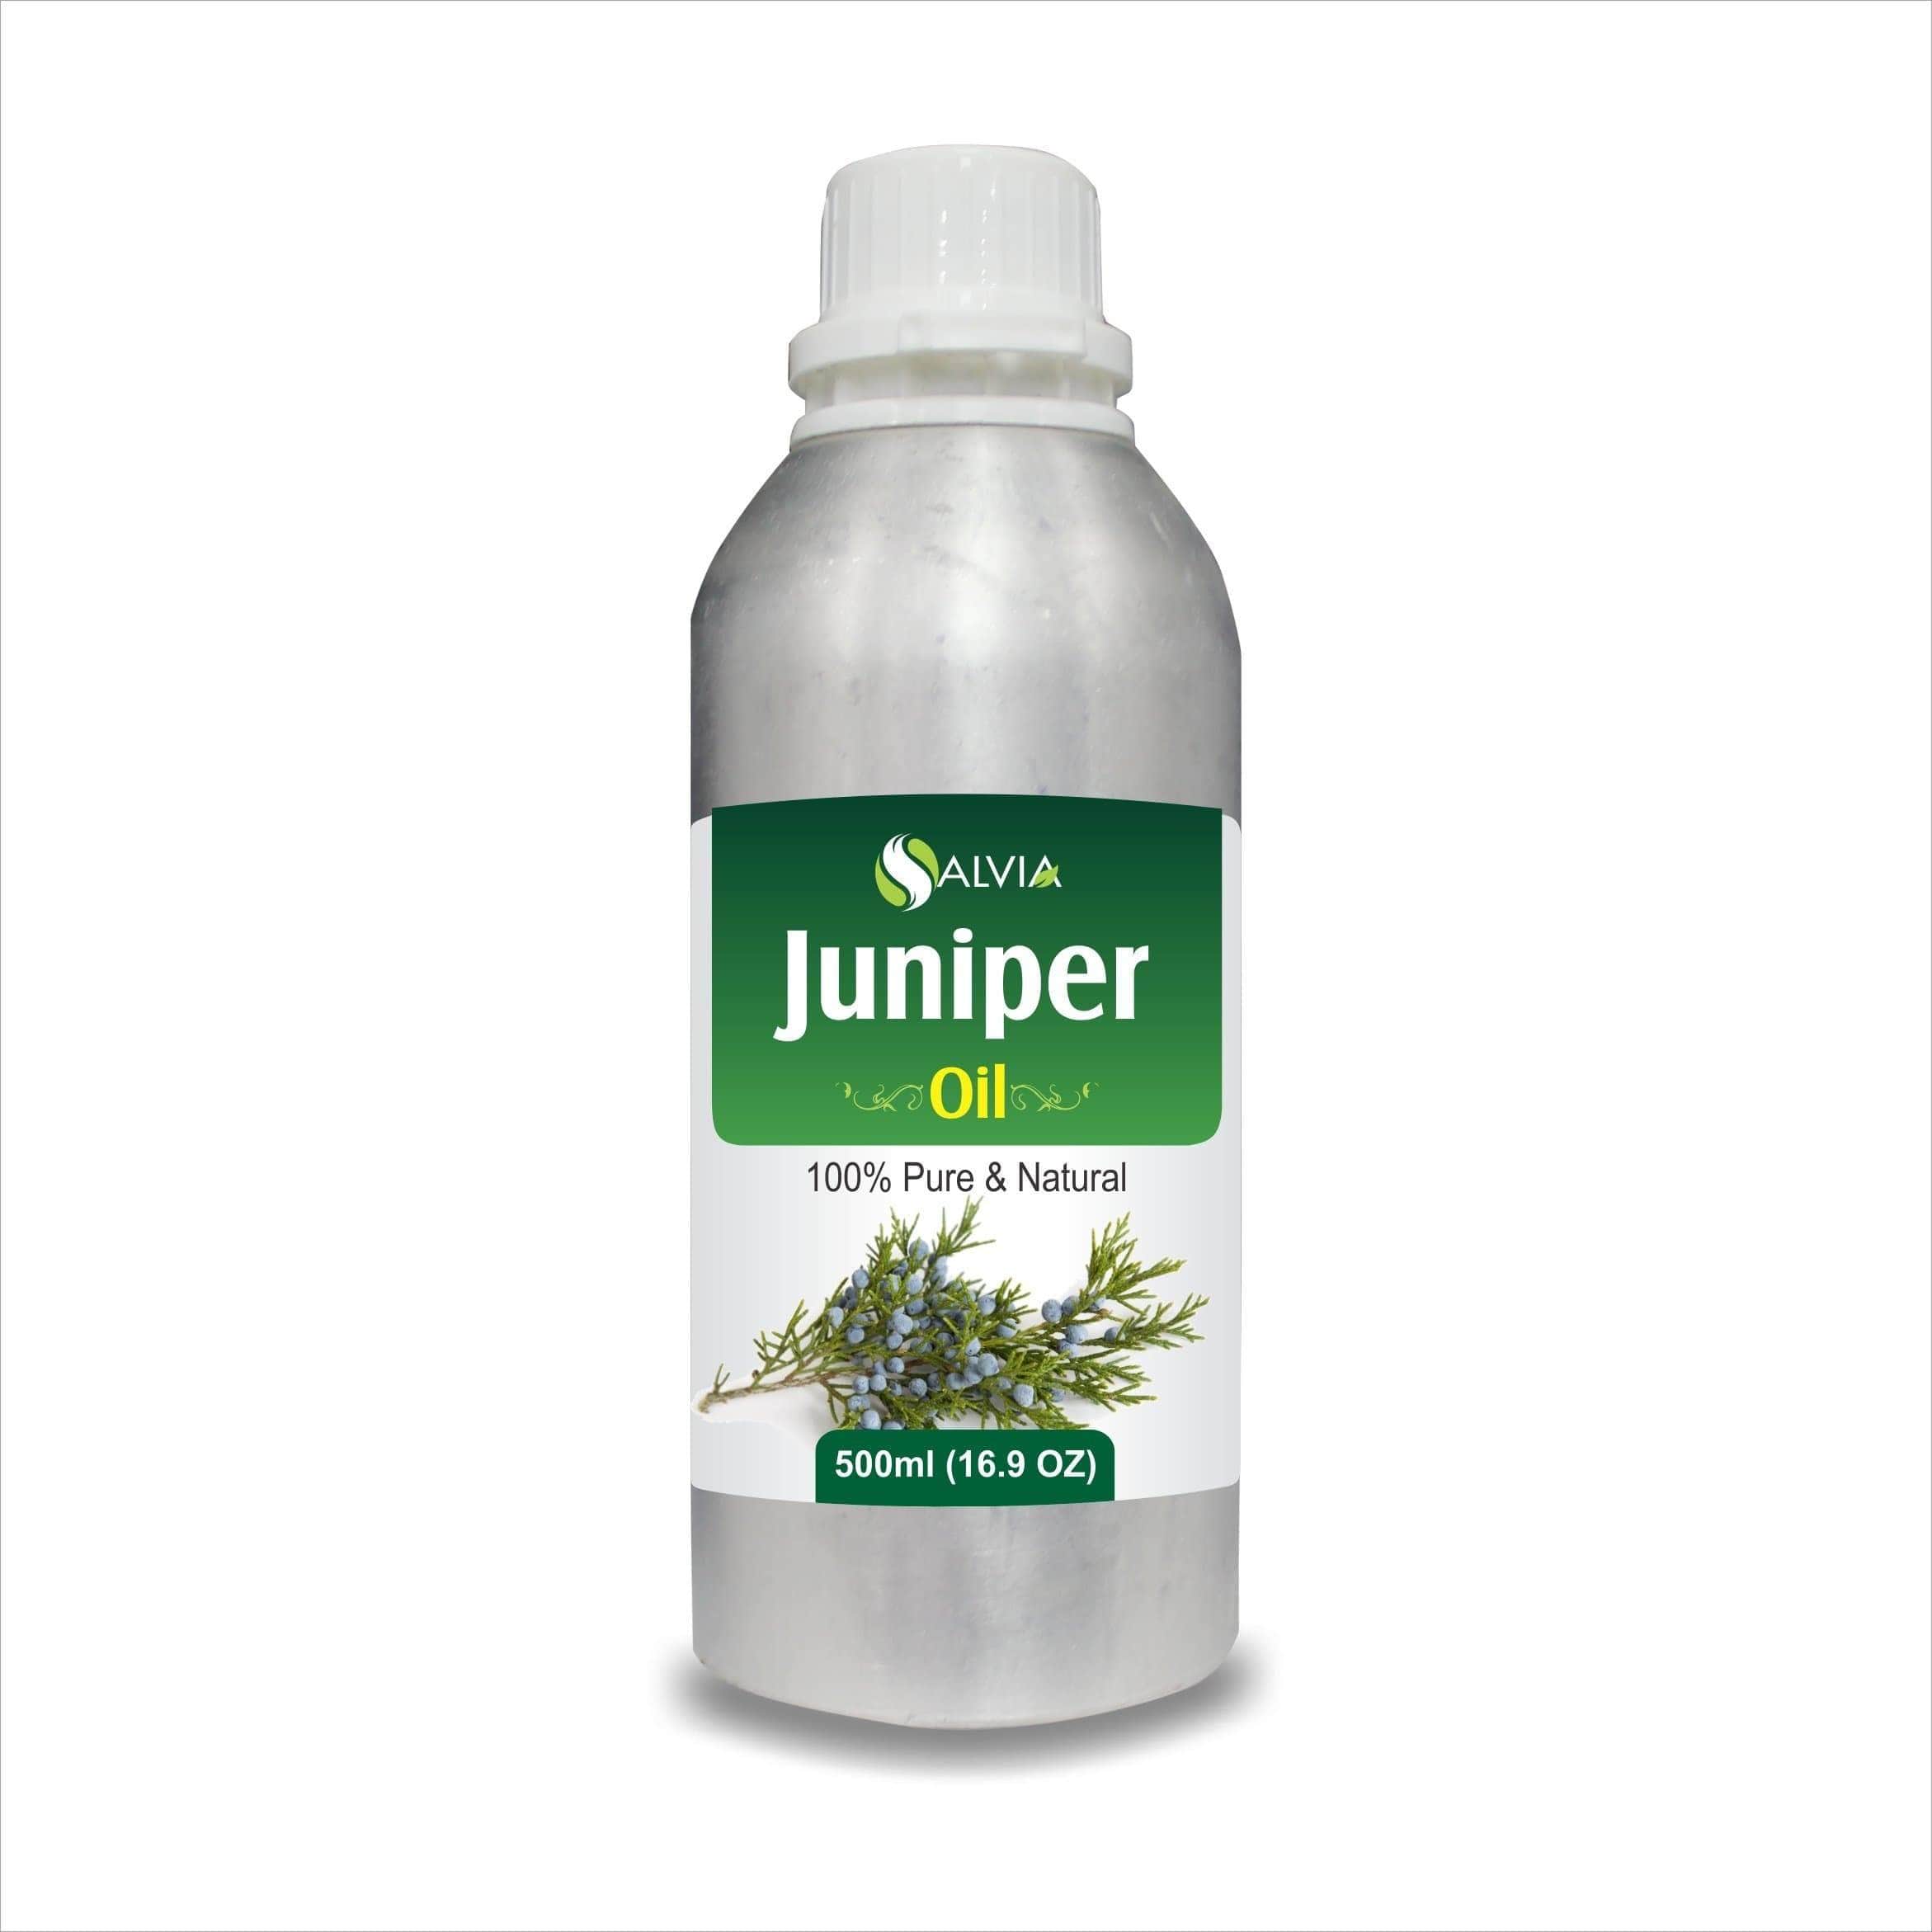 juniper oil benefits